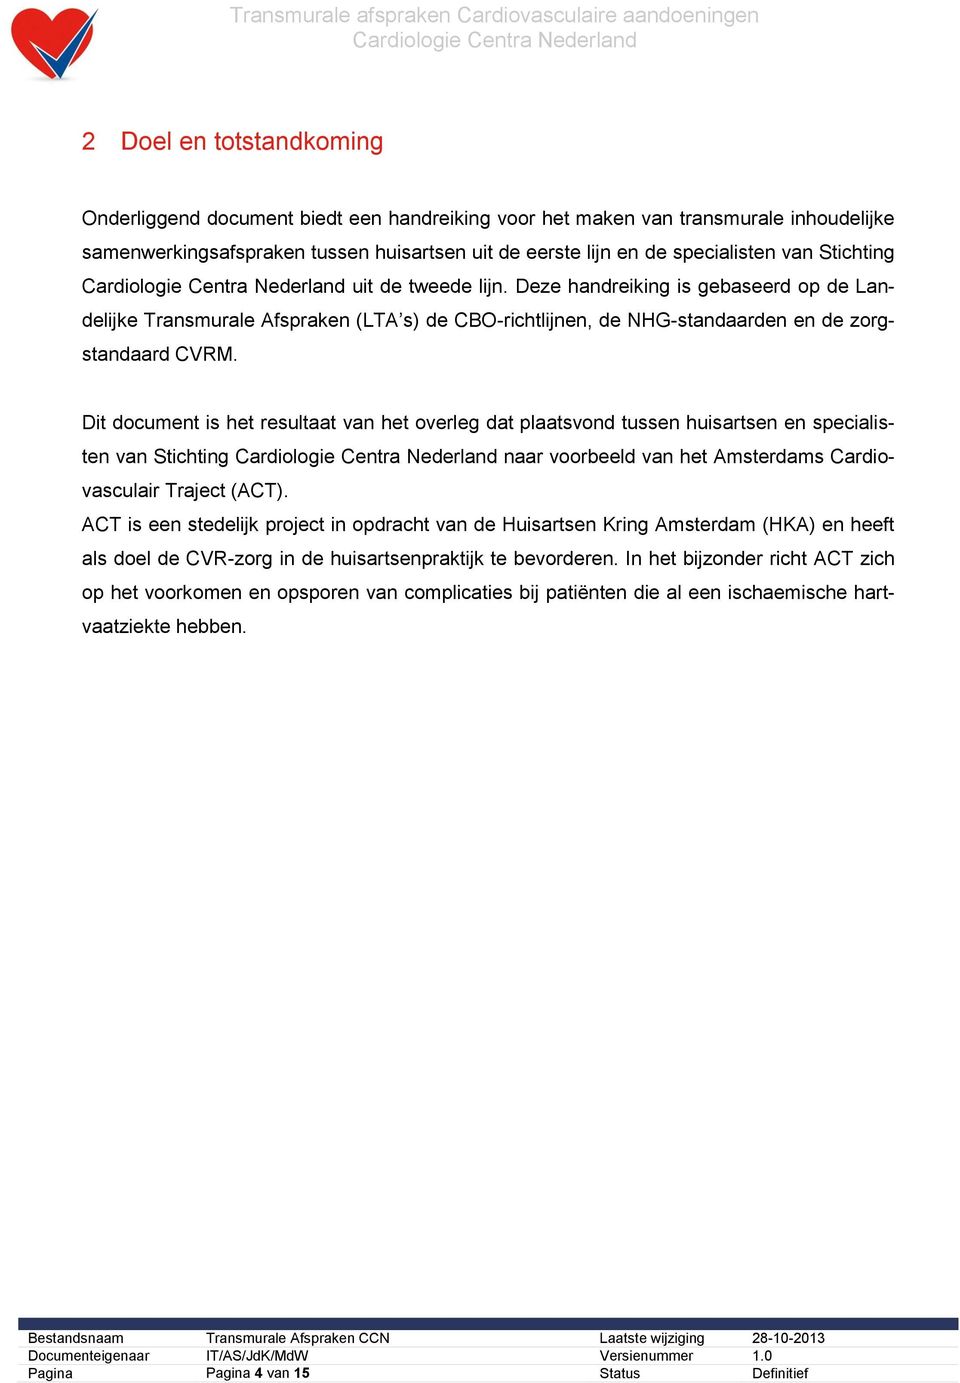 Dit document is het resultaat van het overleg dat plaatsvond tussen huisartsen en specialisten van Stichting naar voorbeeld van het Amsterdams Cardiovasculair Traject (ACT).